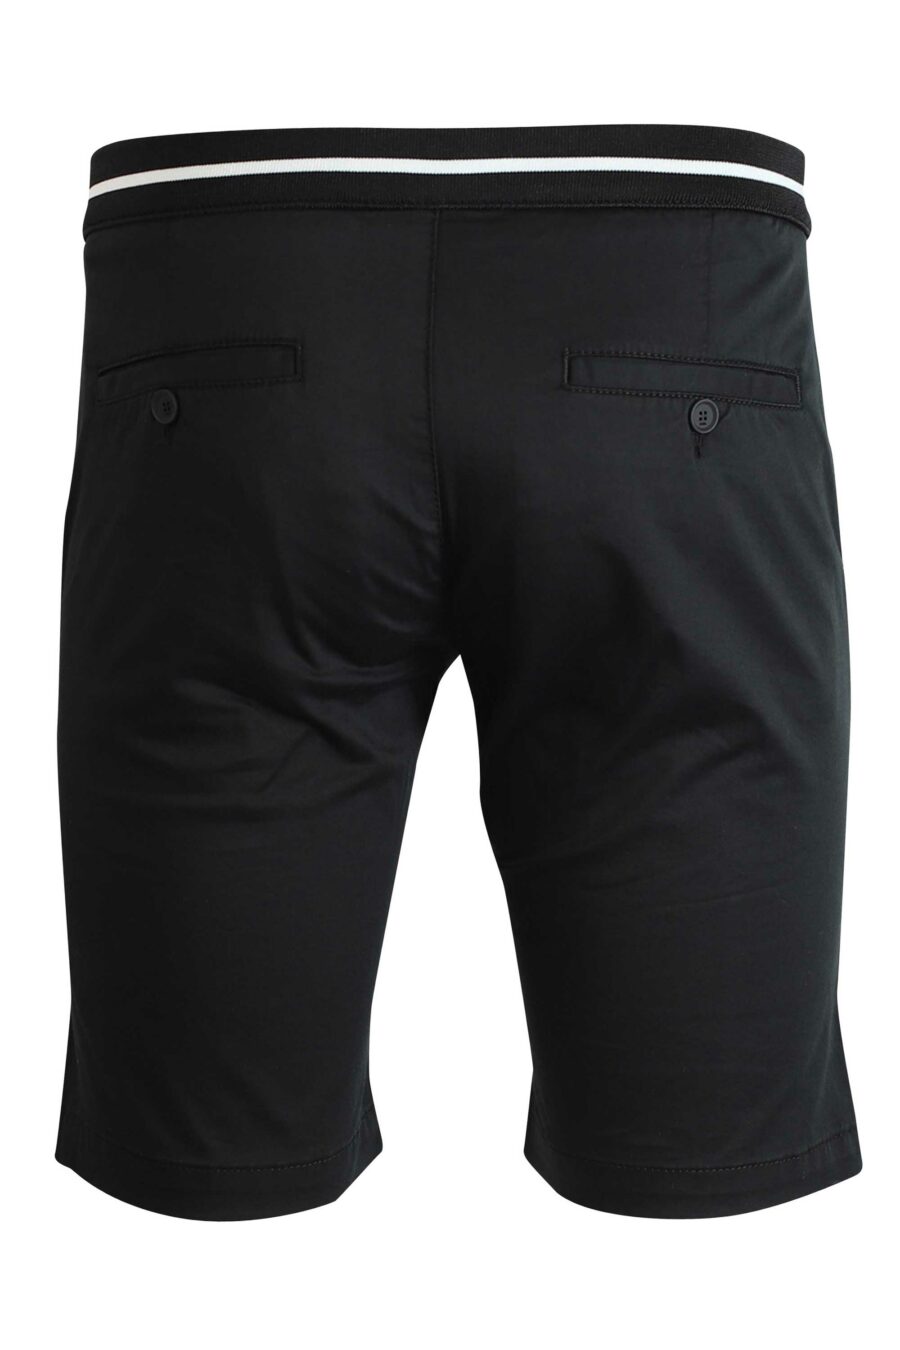 Schwarze Shorts mit weißen Details - 4062226164863 3